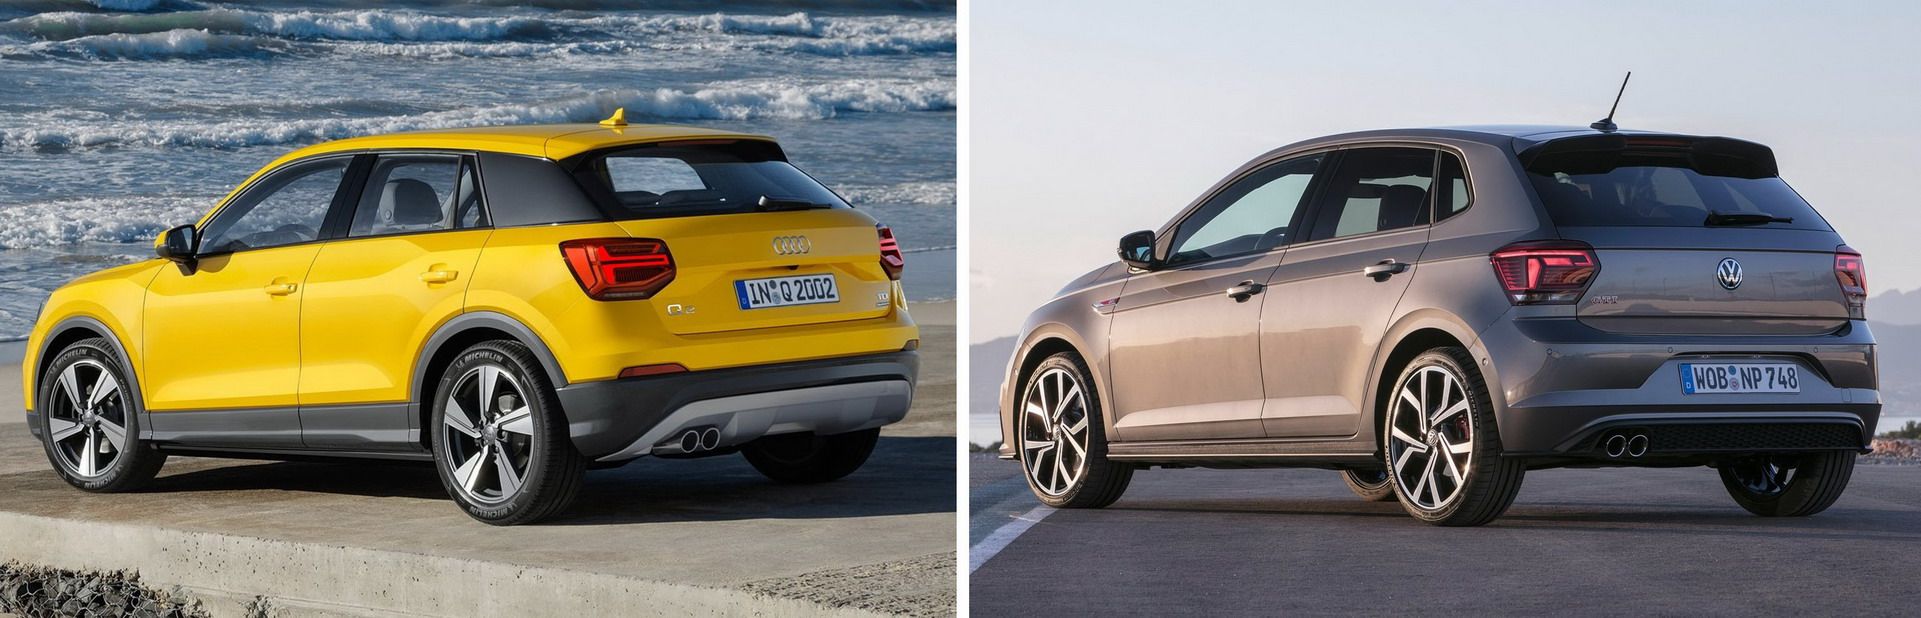 Volkswagen, Audi, Porsche... đang ngày càng giống nhau